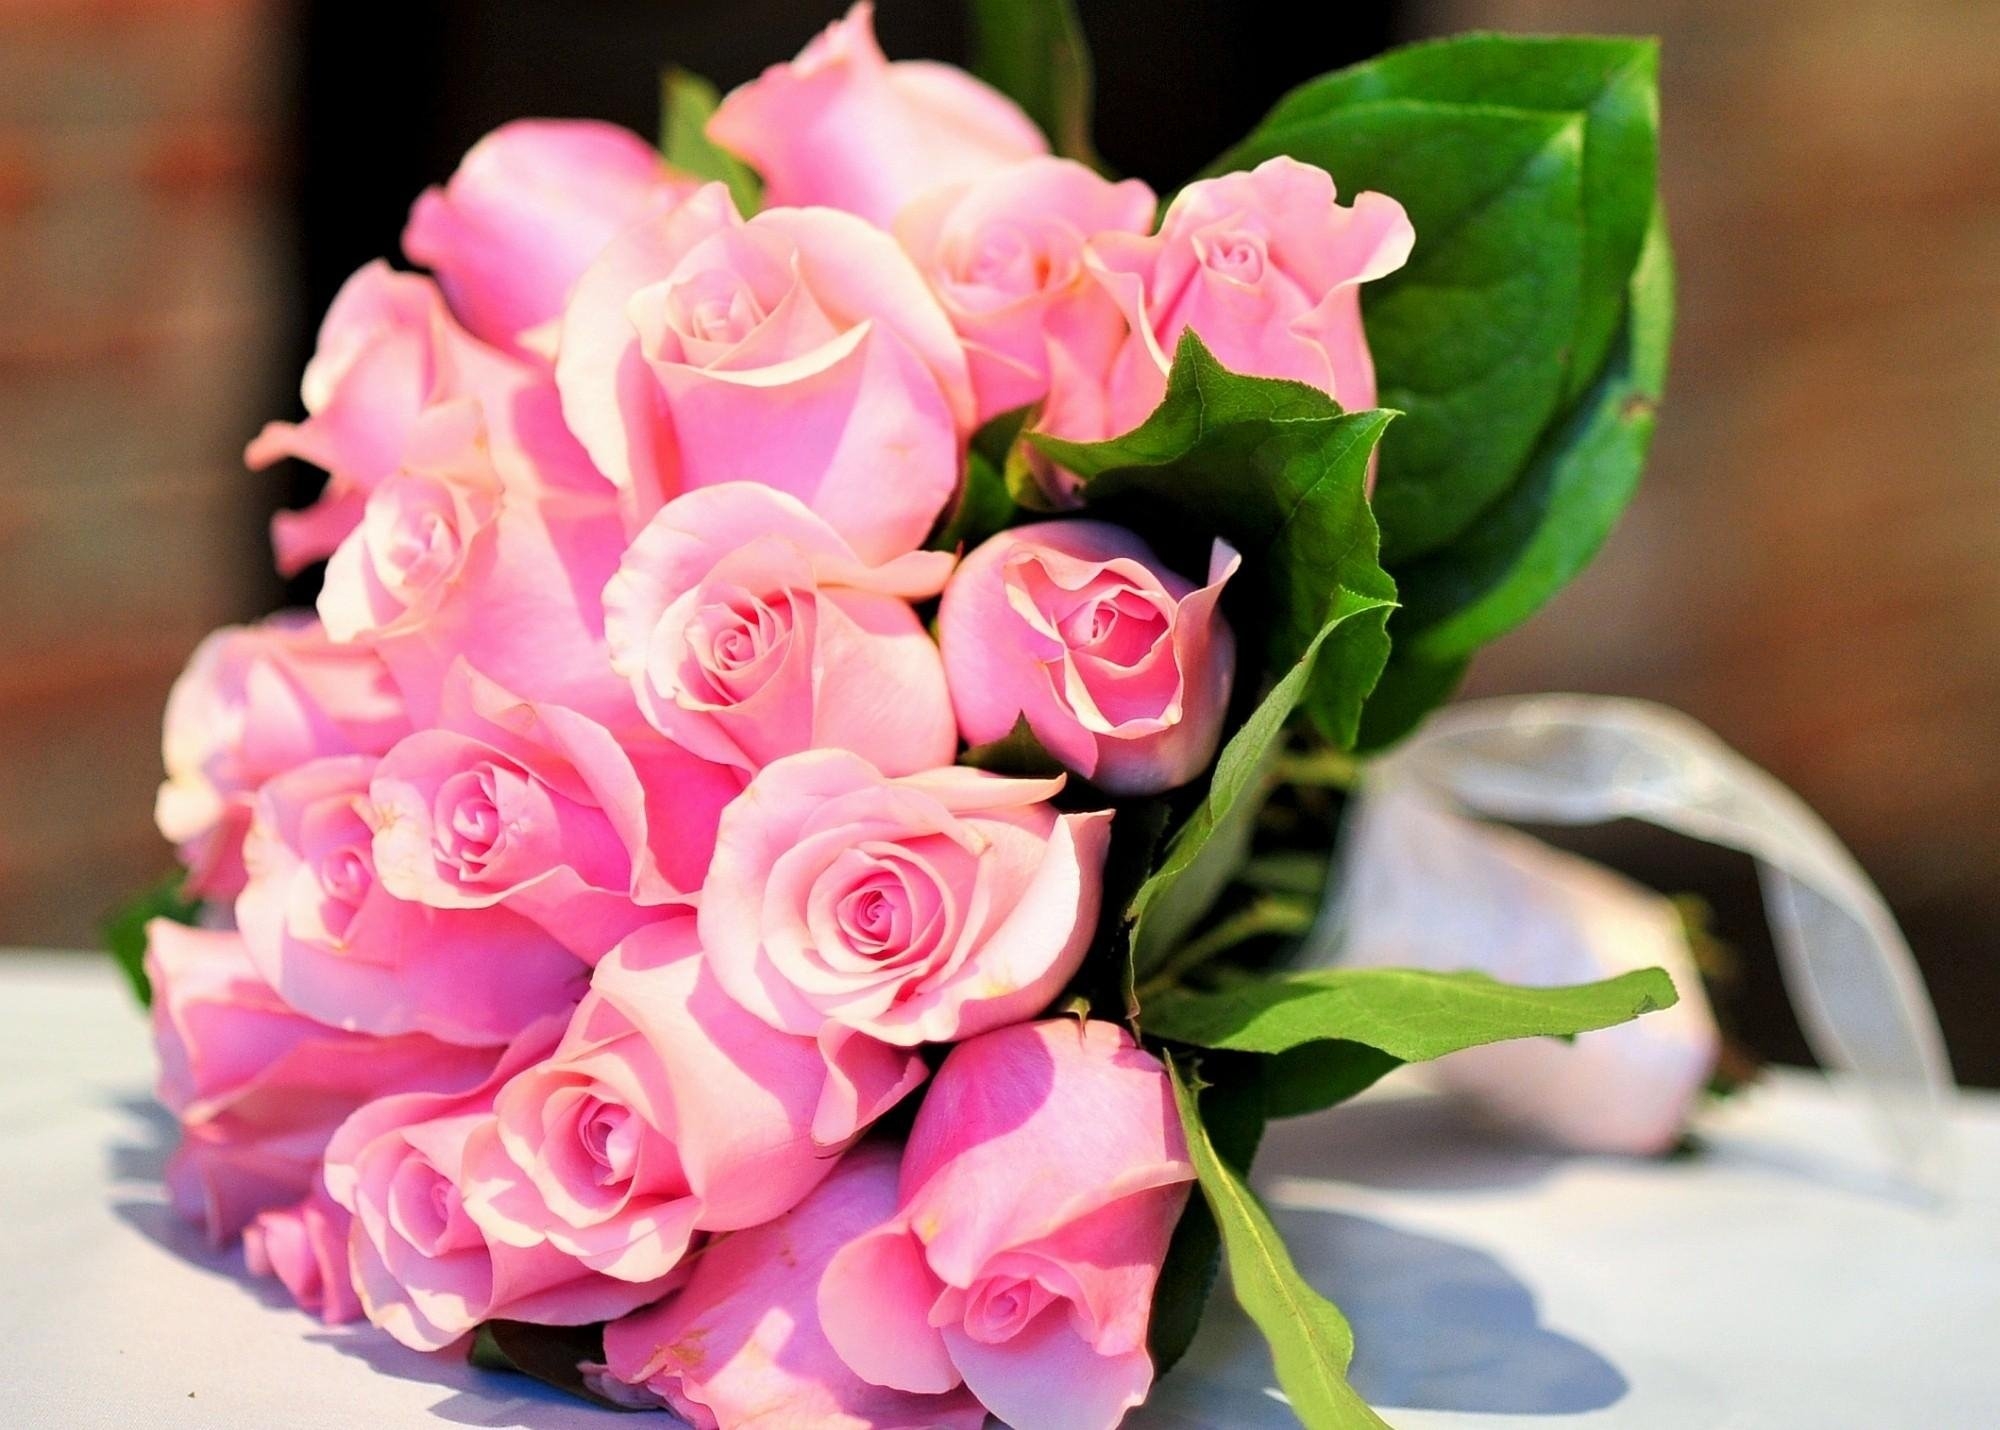 一束美丽的粉红色玫瑰花